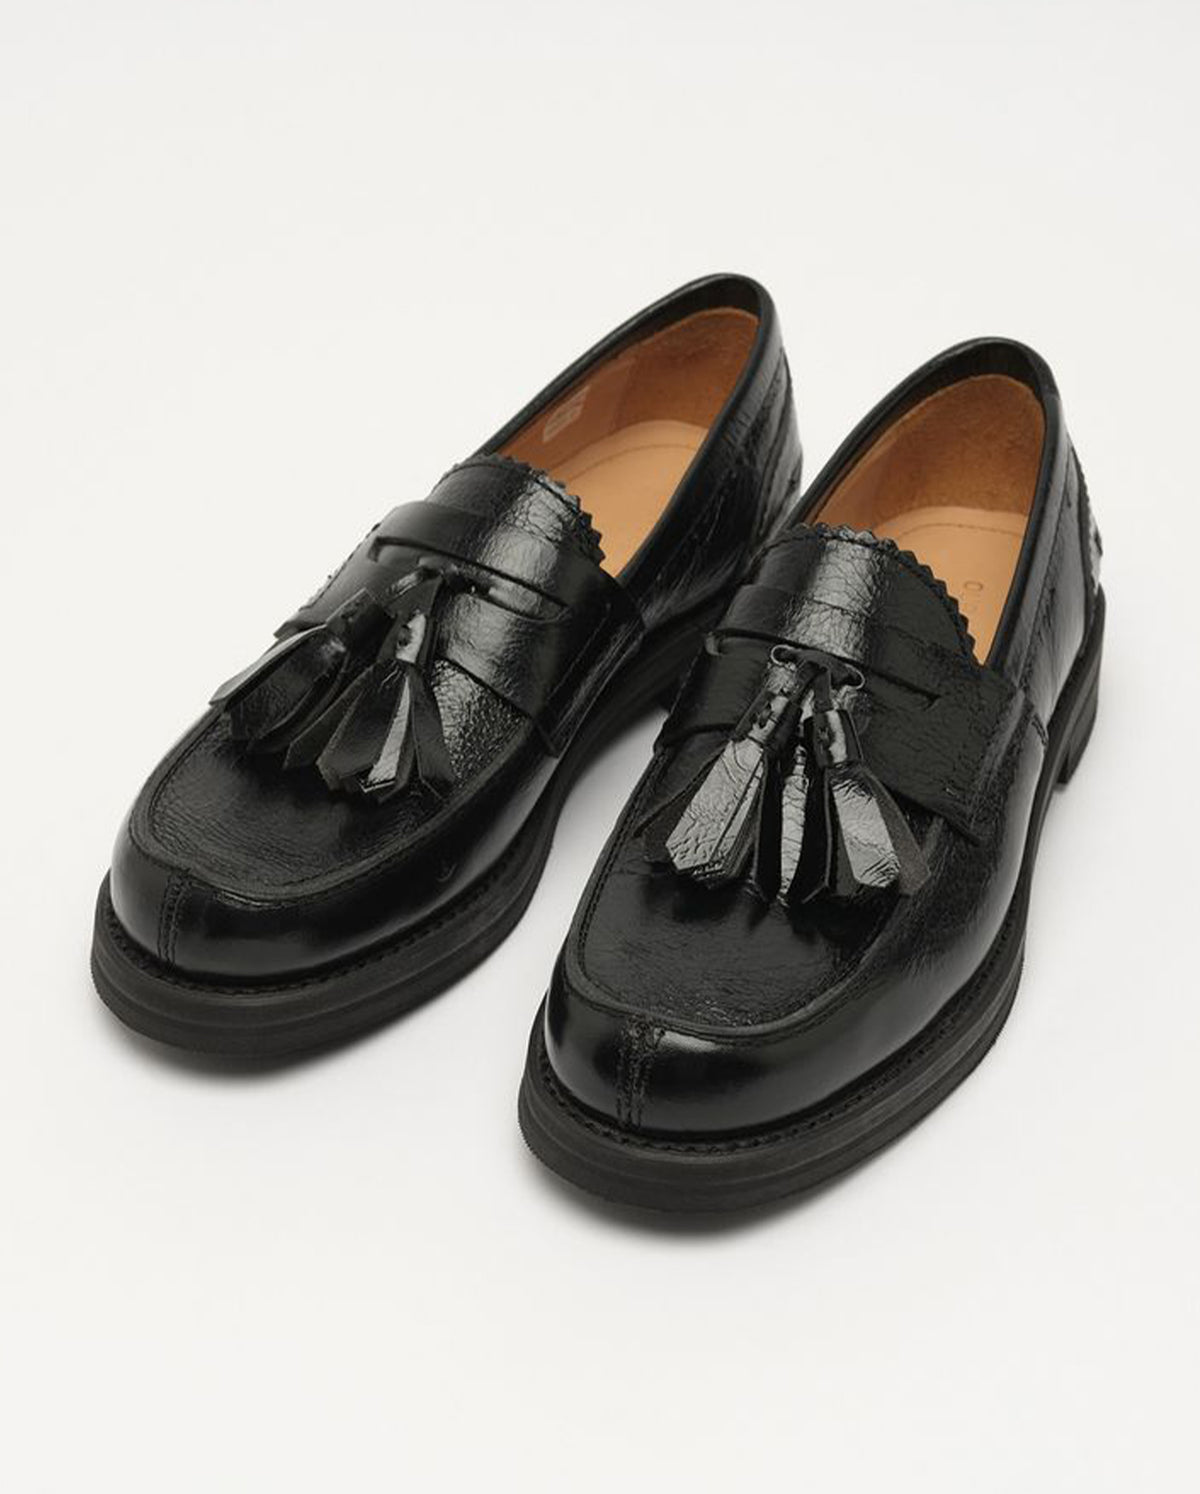 Leather Tassel Loafer - Black